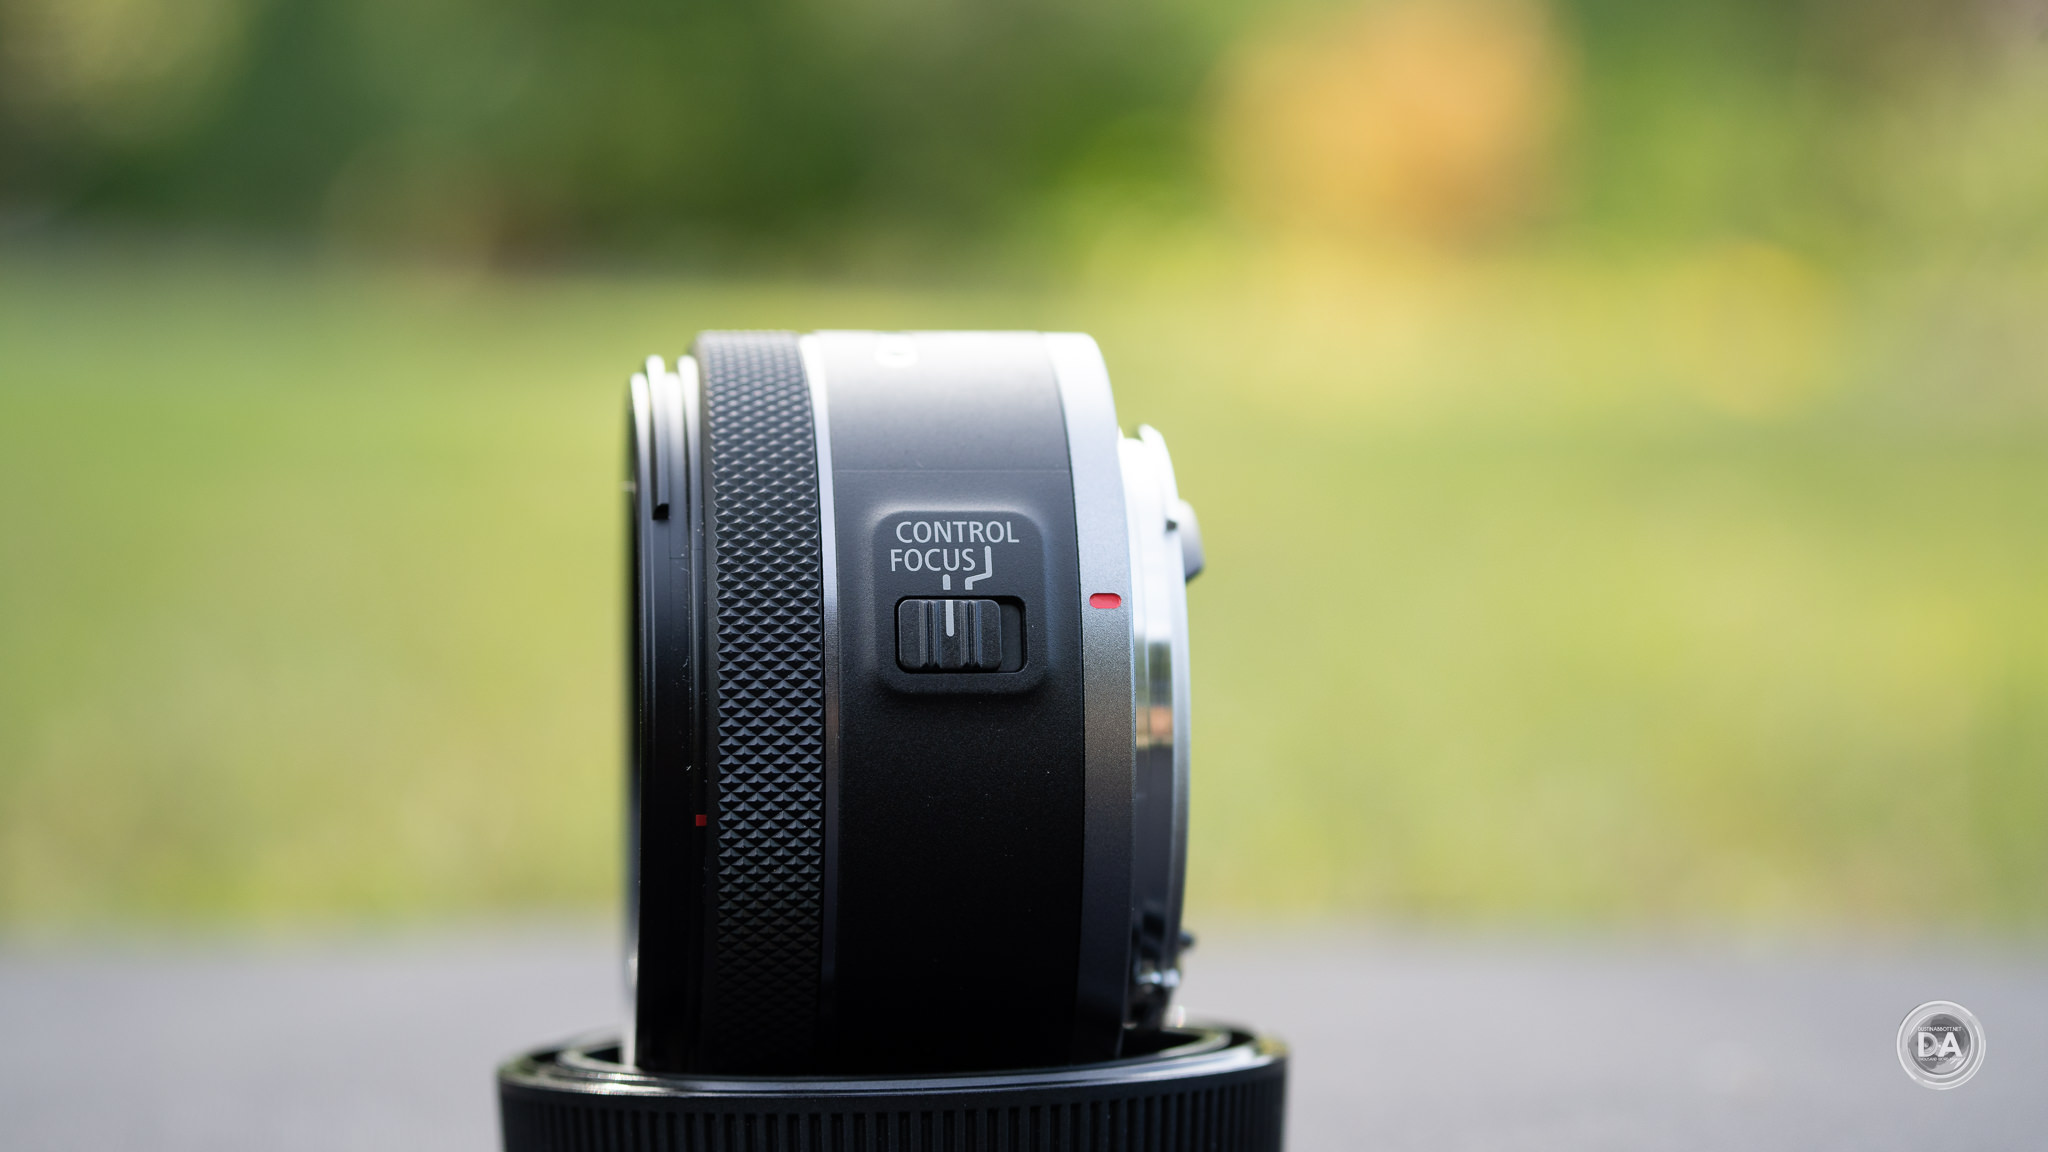 Canon RF 16mm F2.8 STM Review - DustinAbbott.net